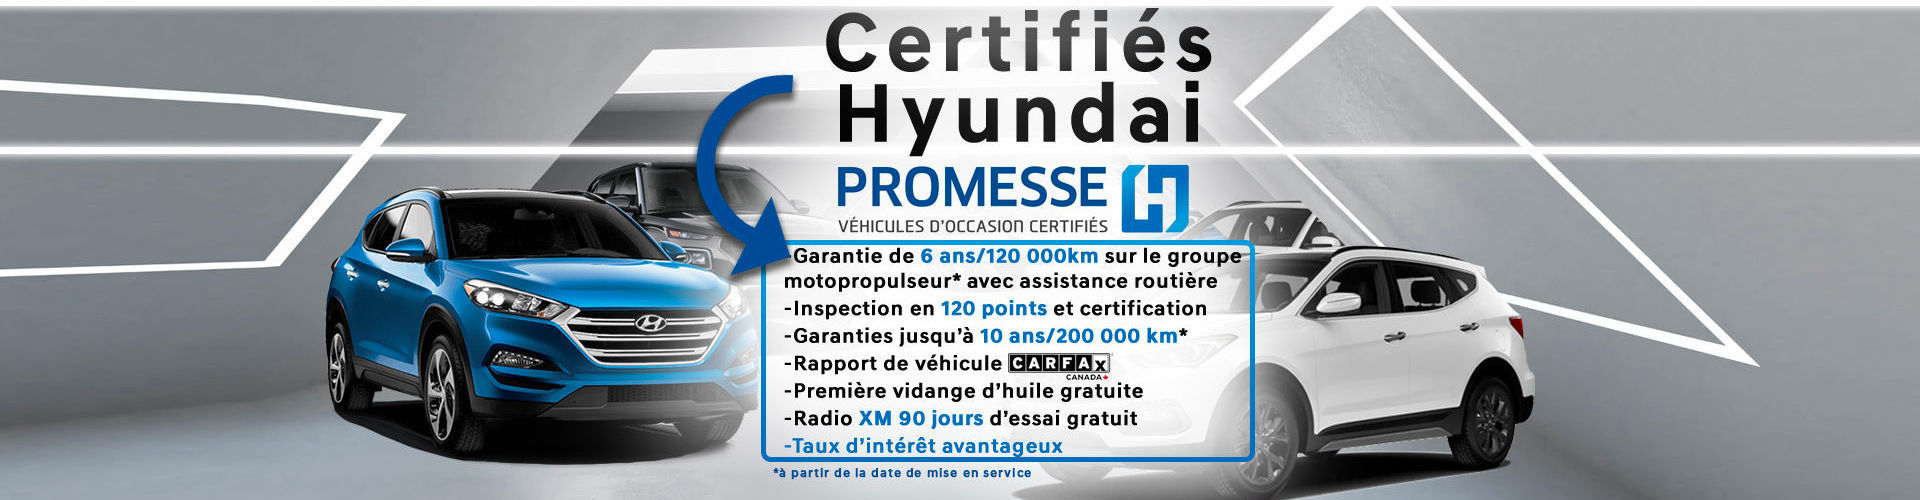 Certifié hyundai